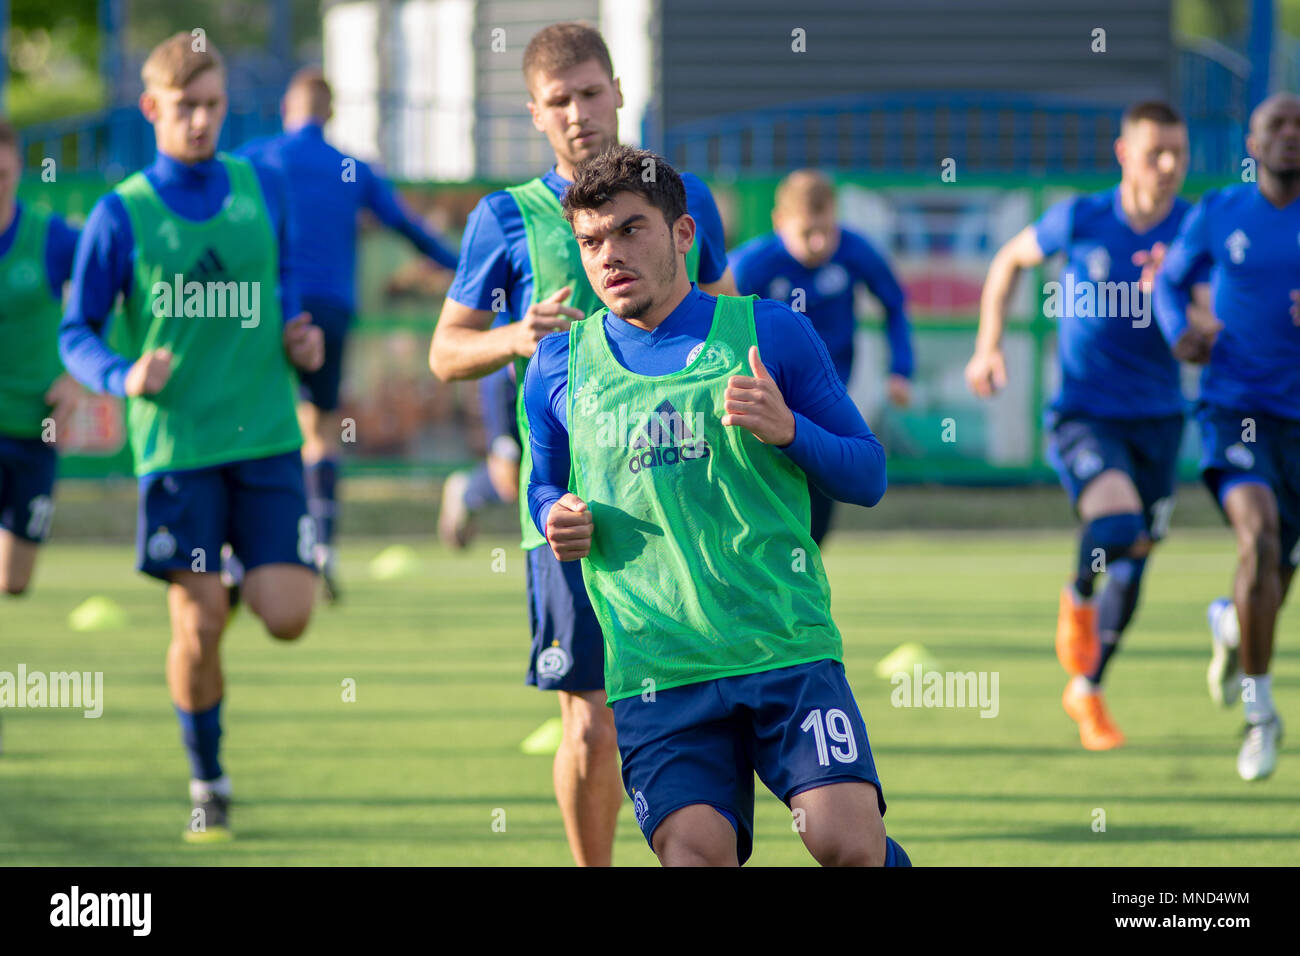 MINSK, BELARUS - 14 MAI 2018 : Soccer player NOYOK ALEKSANDR formation avant le match de football Premier League entre Dinamo Minsk et Banque D'Images